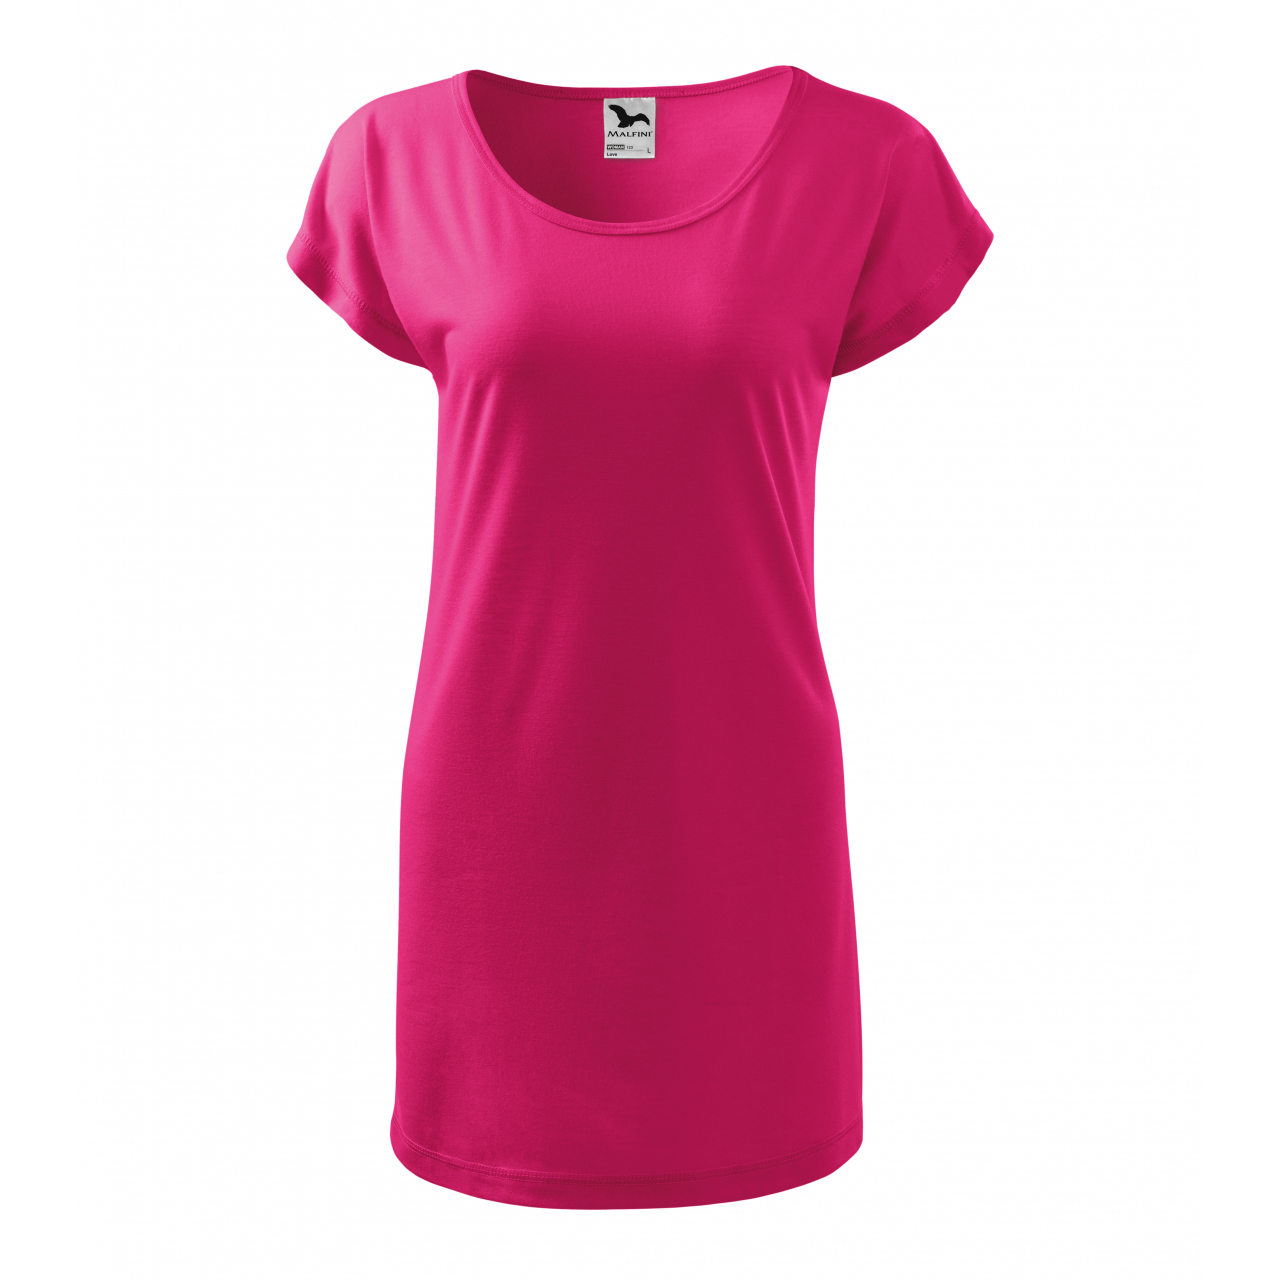 Šaty Malfini Love - tmavě růžové, XL